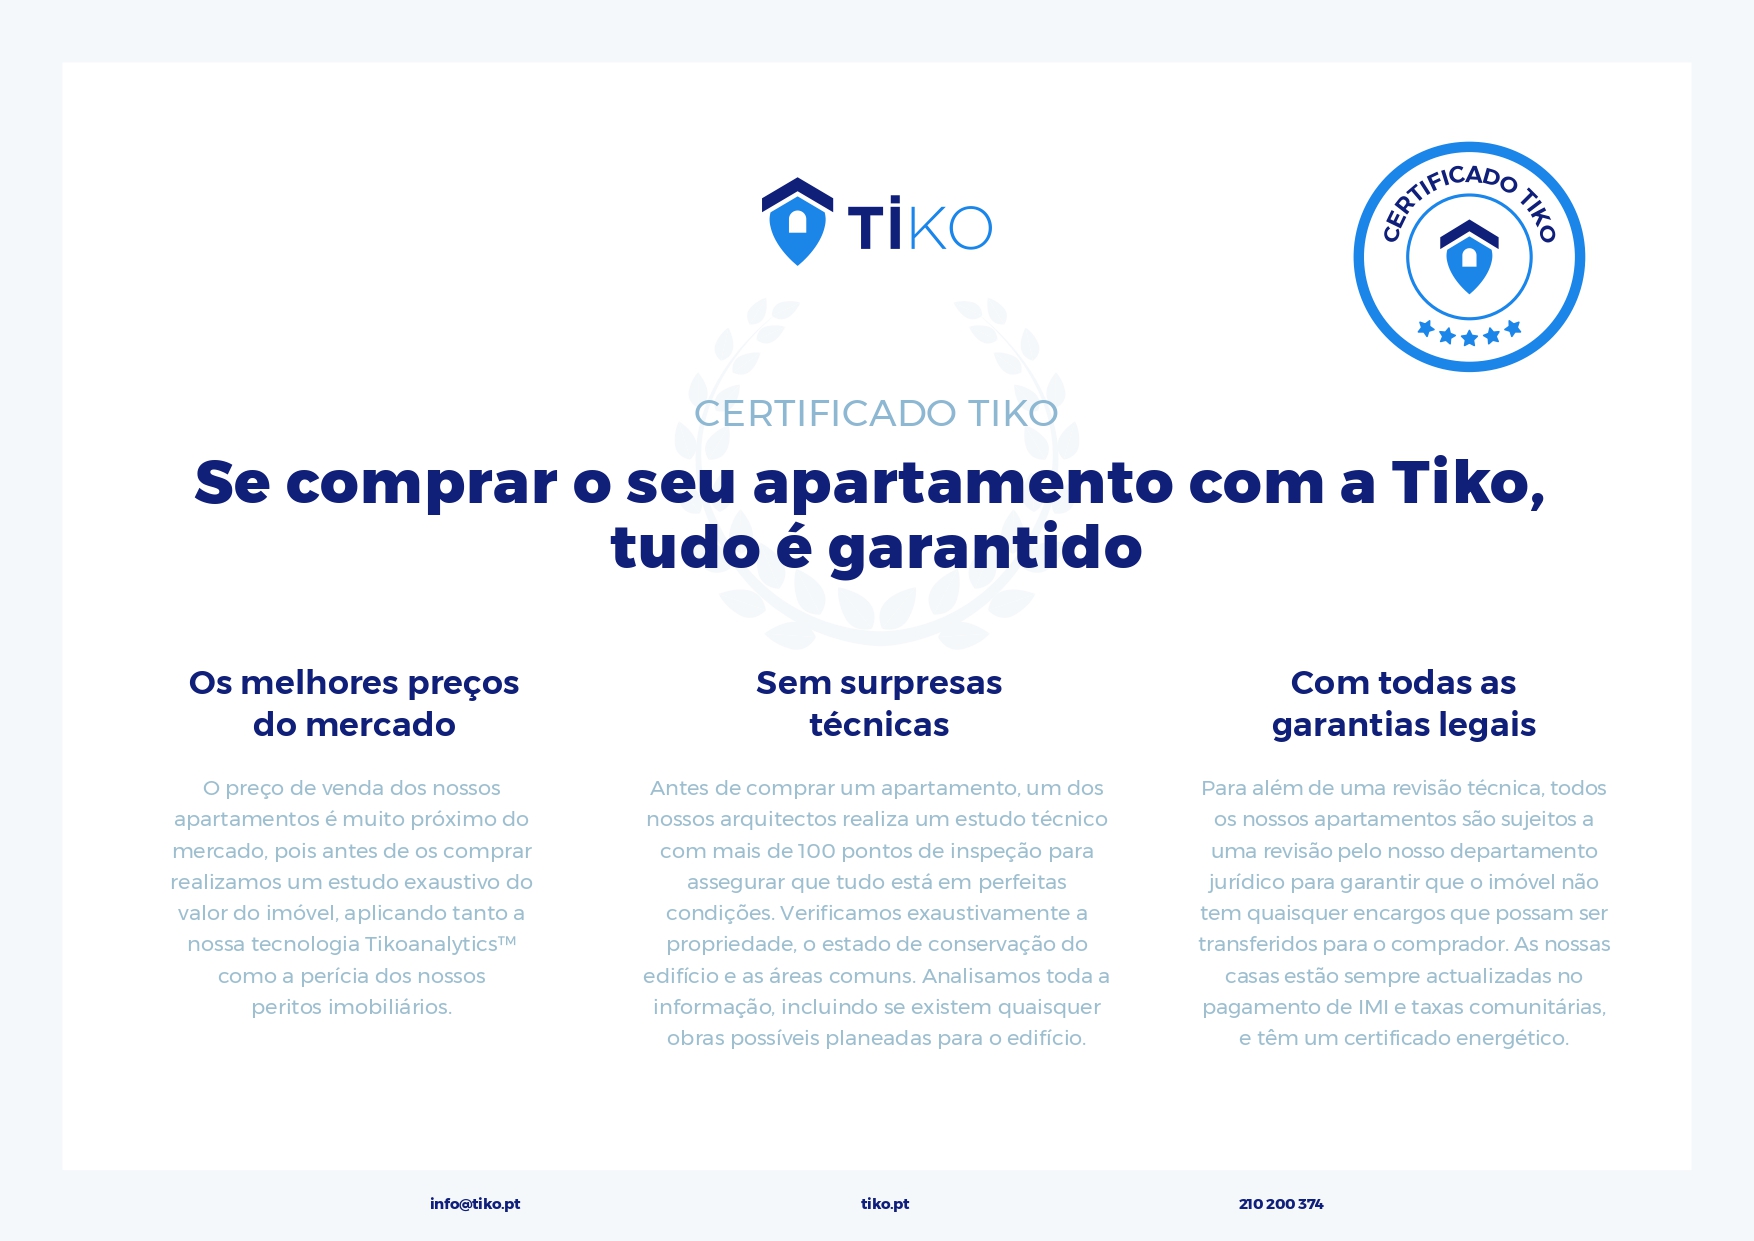 Apartamento Tiko em venda, na Travessa de Santana, localizado em Santa Maria Maior, no concelho de Lisboa